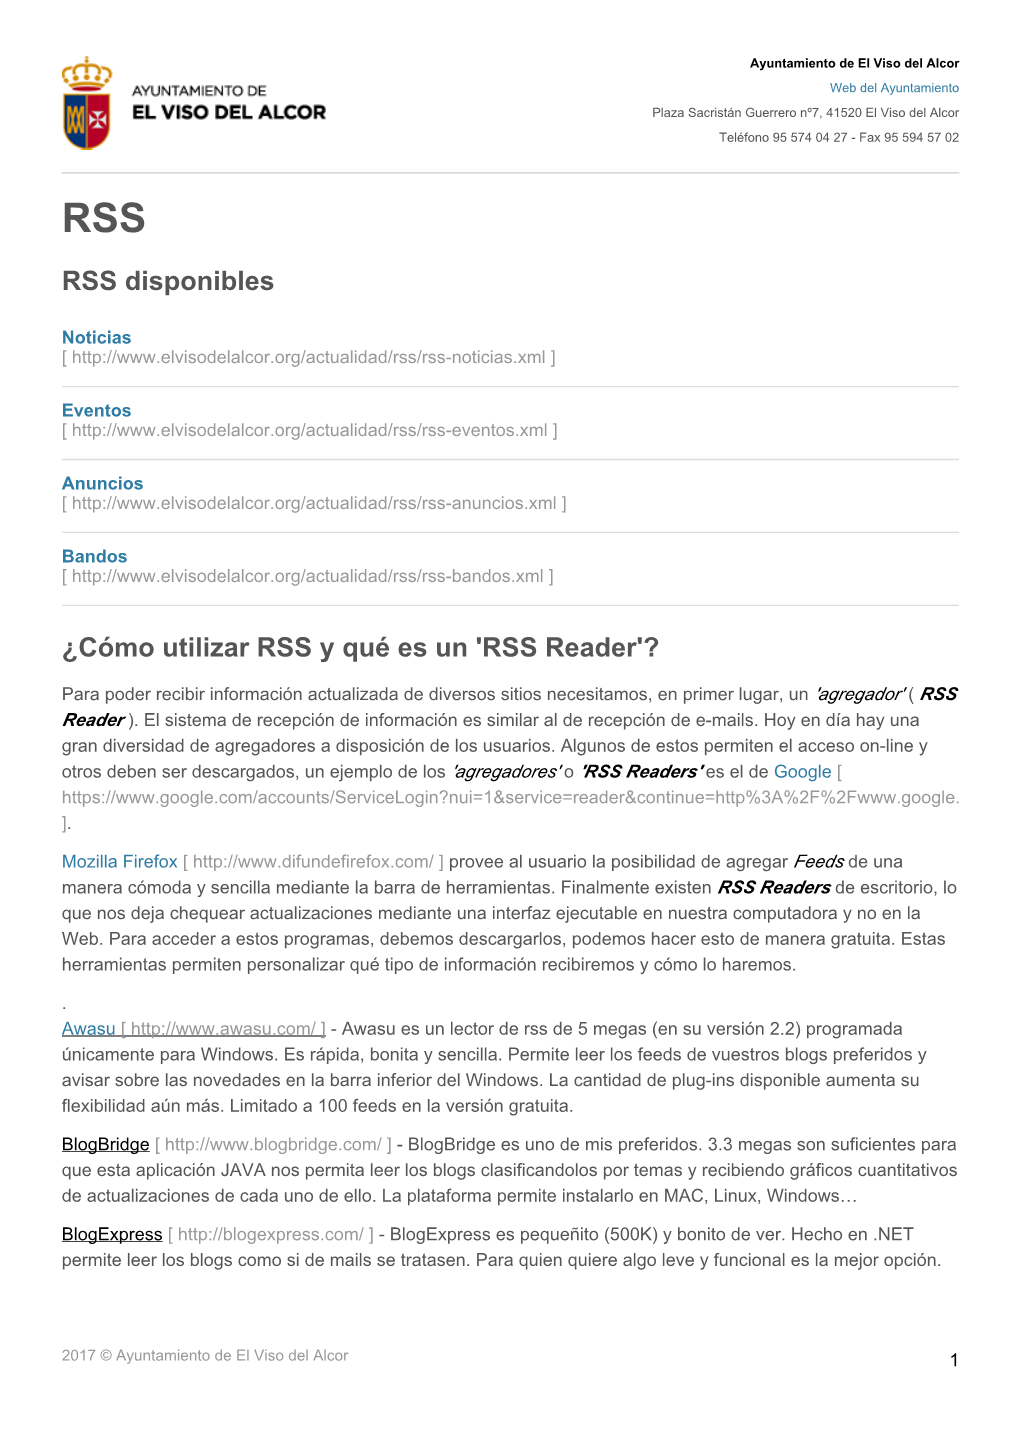 RSS Disponibles ¿Cómo Utilizar RSS Y Qué Es Un 'RSS Reader'?